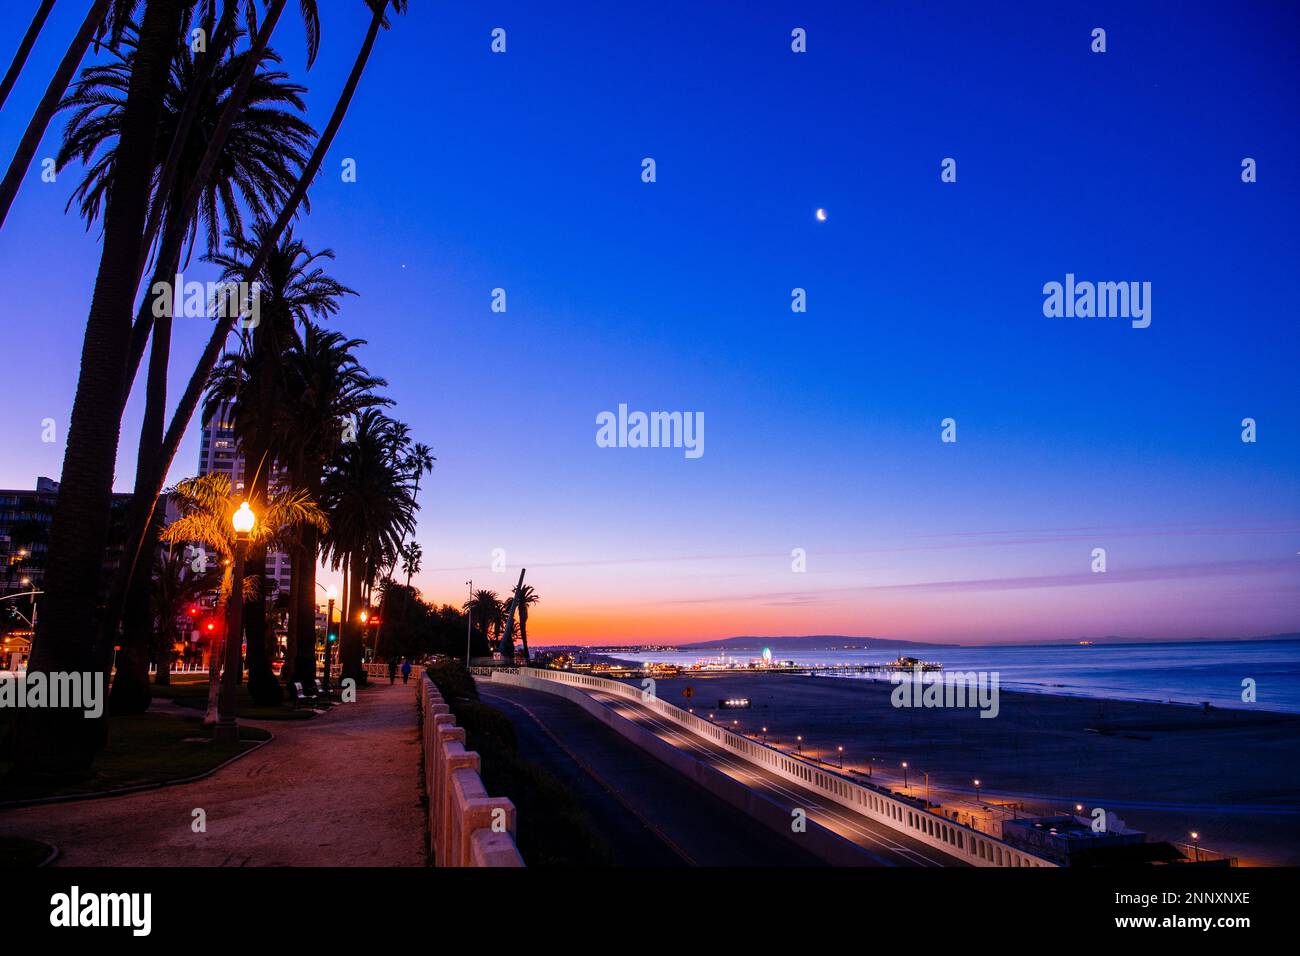 Palm trees at sunset, Zuma Beach, Malibu, California, USA Stock Photo